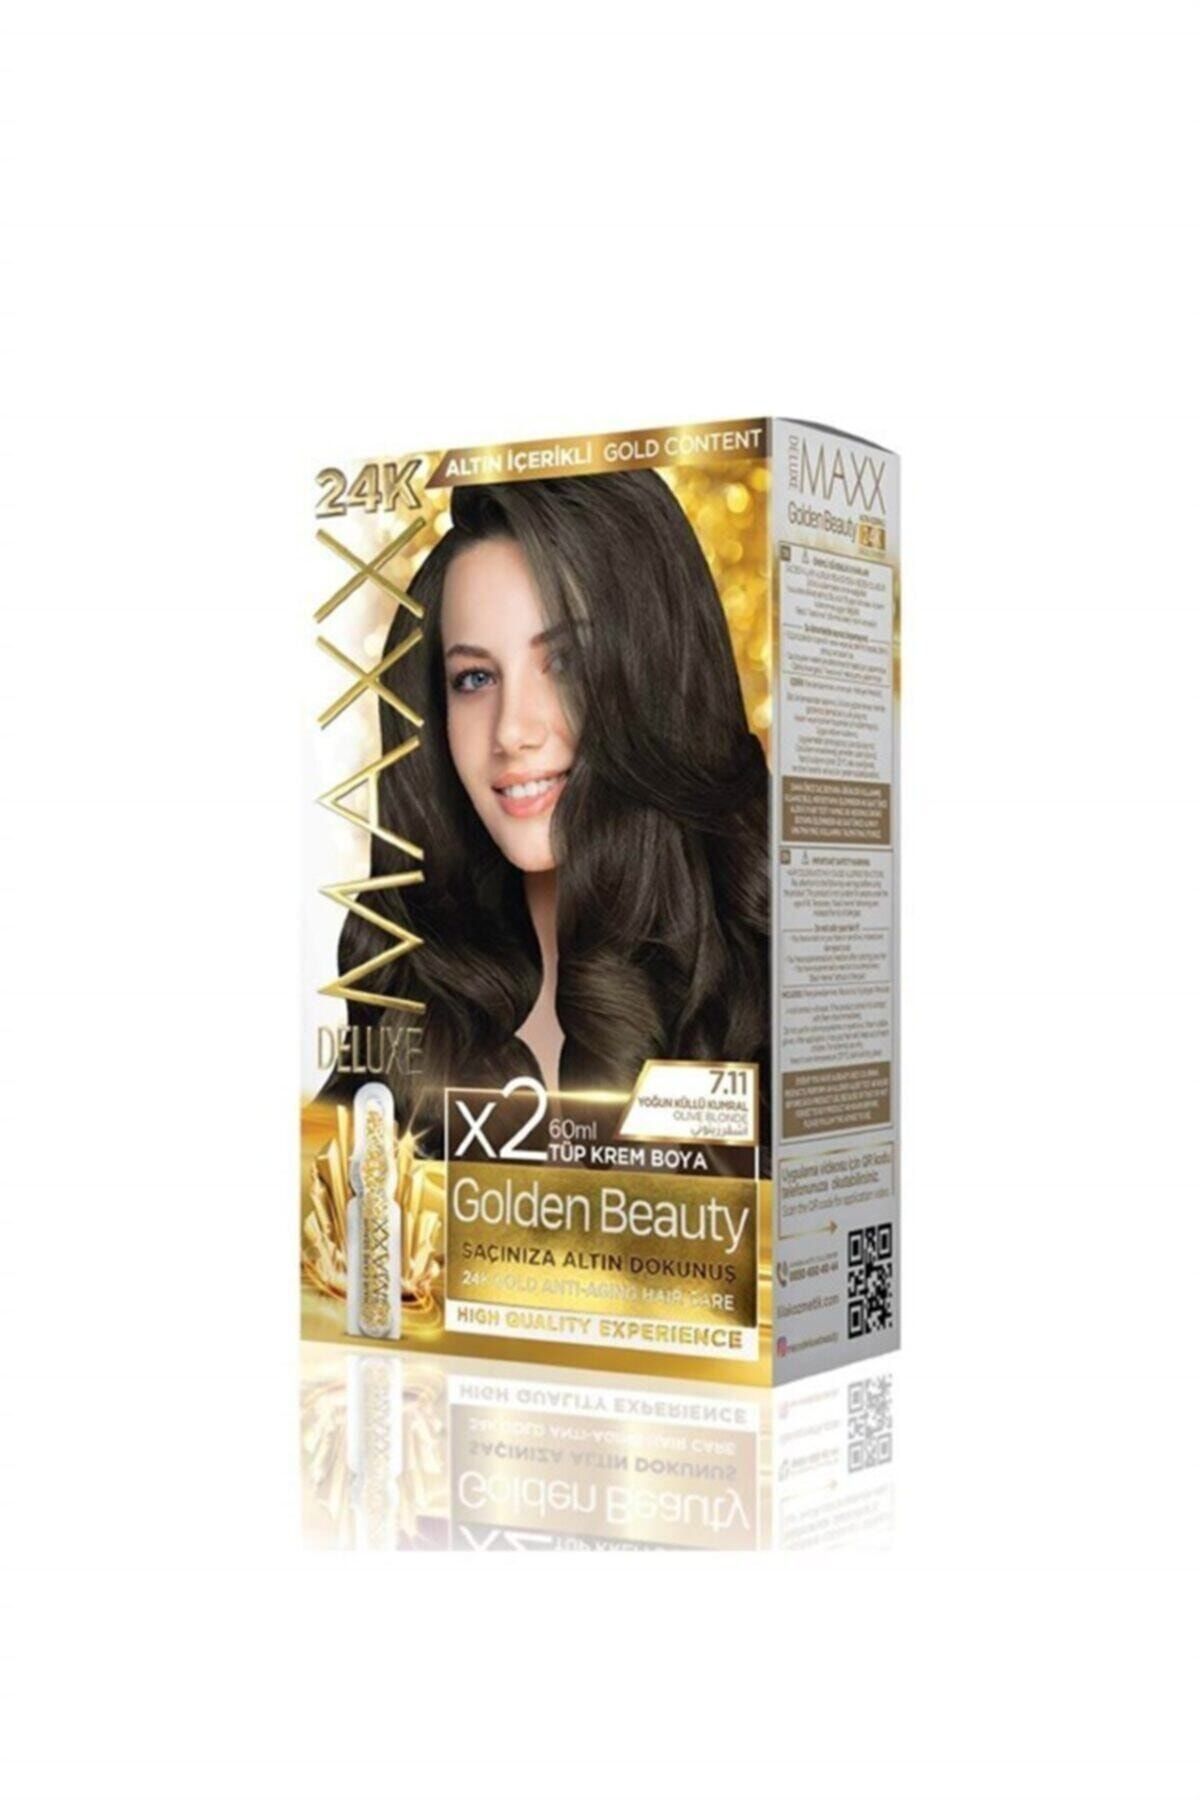 Maxx Deluxe Golden Beauty 24k Altın Içerikli 7.11 Yoğun Küllü Kumral Saç Boya Seti